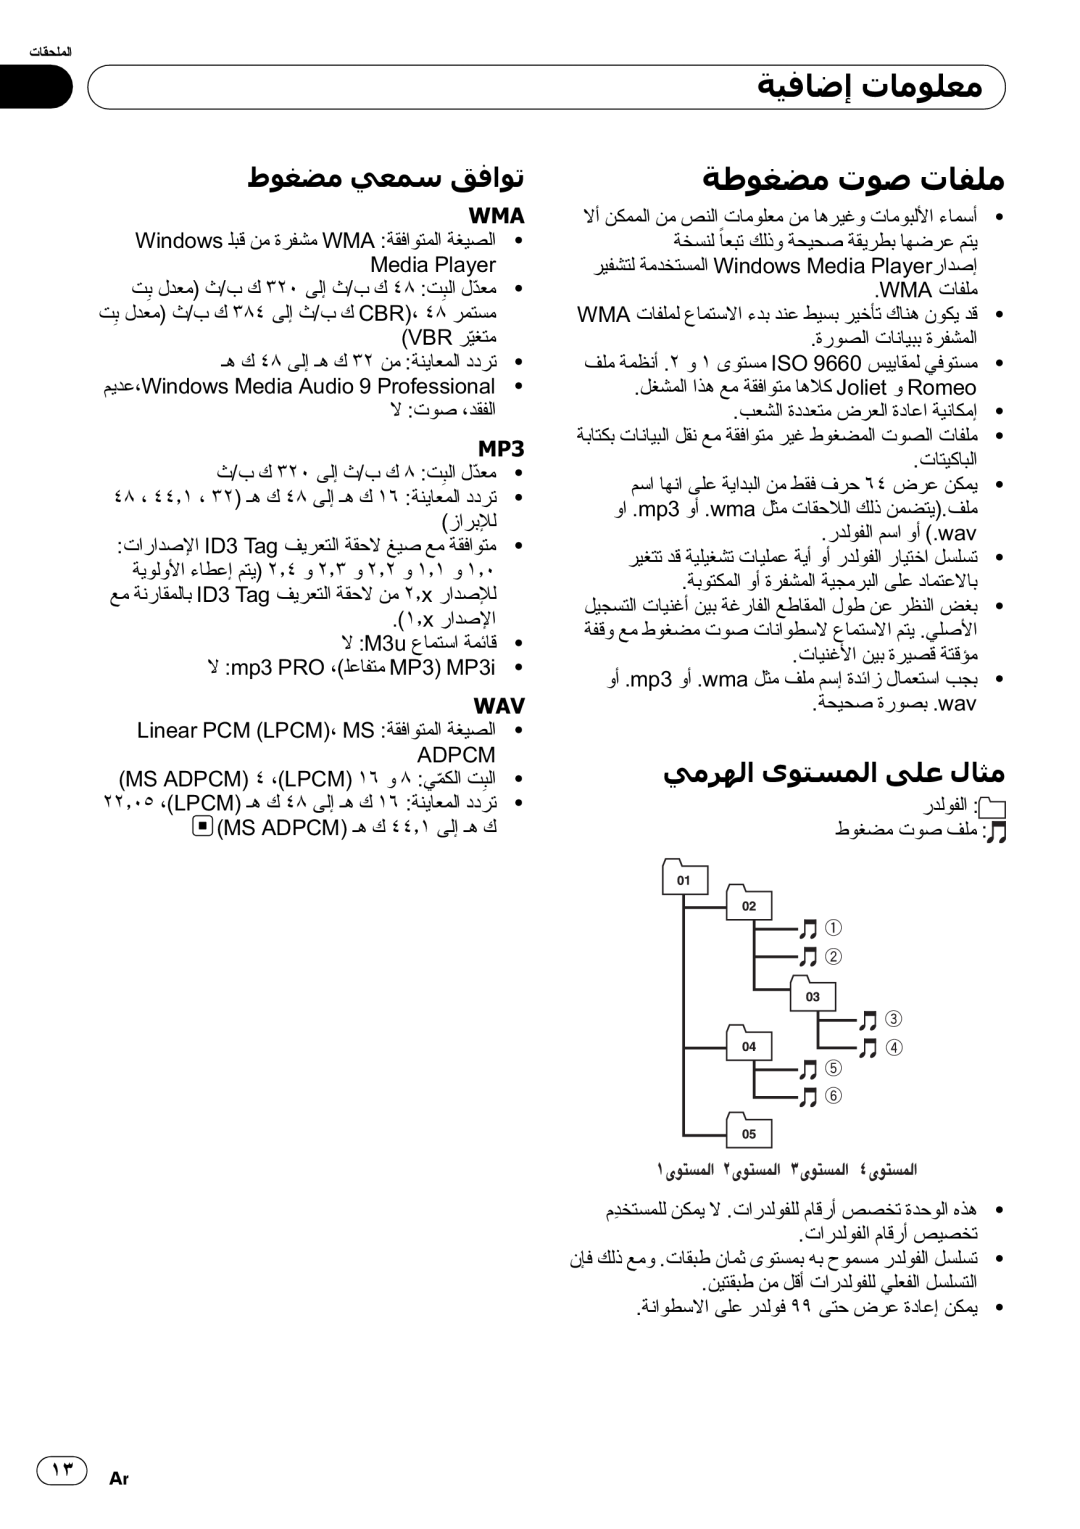 Pioneer DEH-2050MPG operation manual ﺔﻃﻮﻐﻀﻣ ﺕﻮﺻ ﺕﺎﻔﻠﻣ, ﻁﻮﻐﻀﻣ ﻲﻌﻤﺳ ﻖﻓﺍﻮﺗ, ﻲﻣﺮﻬﻟﺍ ﻯﻮﺘﺴﻤﻟﺍ ﻰﻠﻋ ﻝﺎﺜﻣ, ﺔﻴﻓﺎﺿﺇ ﺕﺎﻣﻮﻠﻌﻣ 